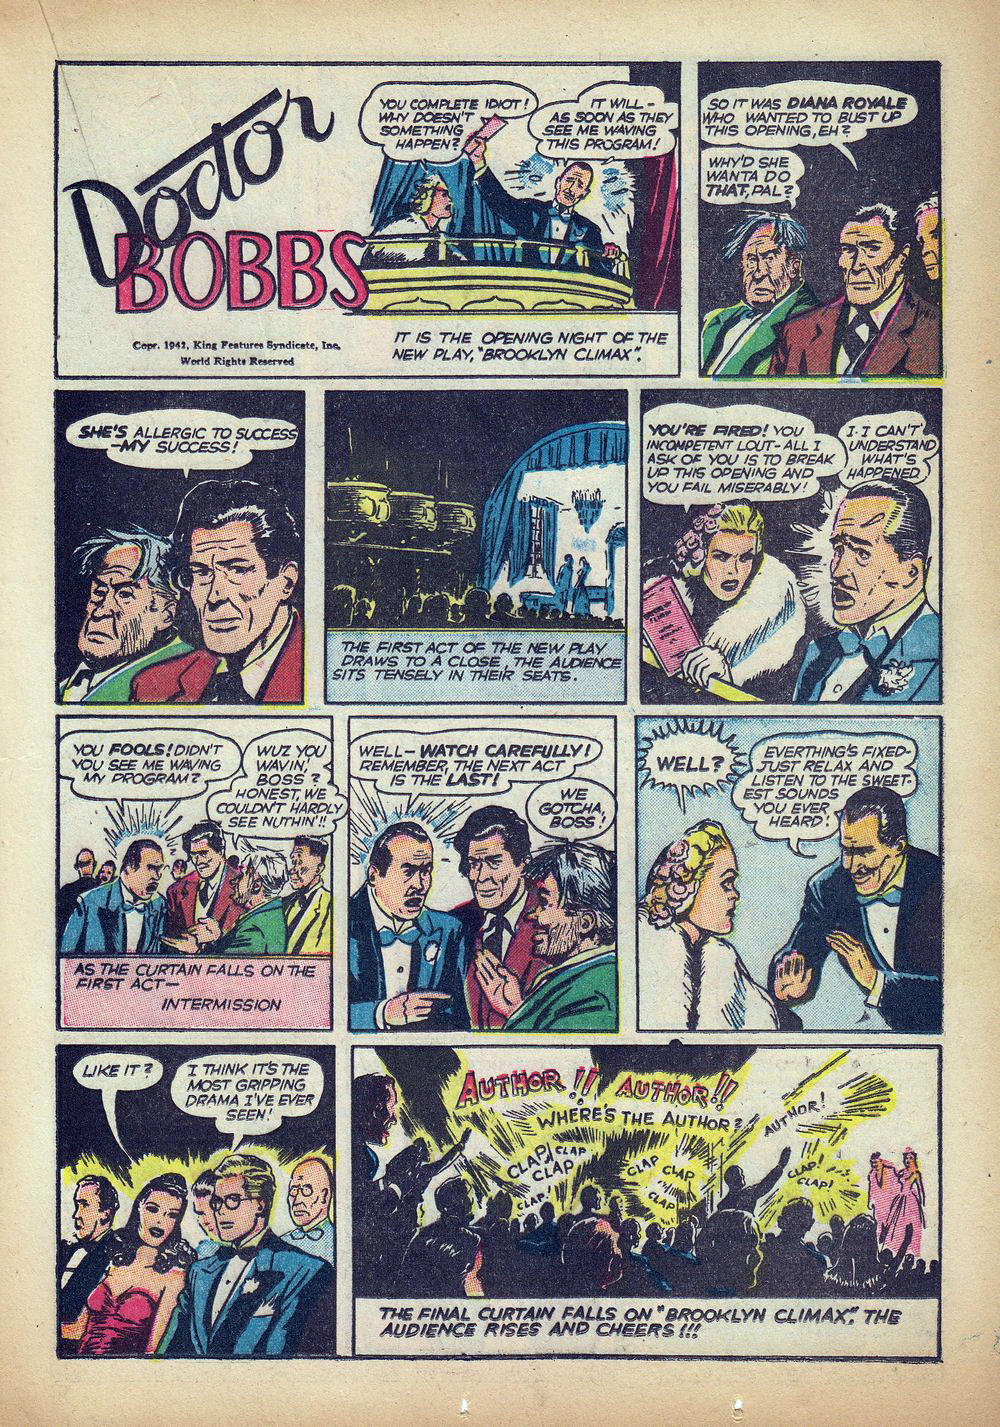 dr. bobbs february 1, 1949